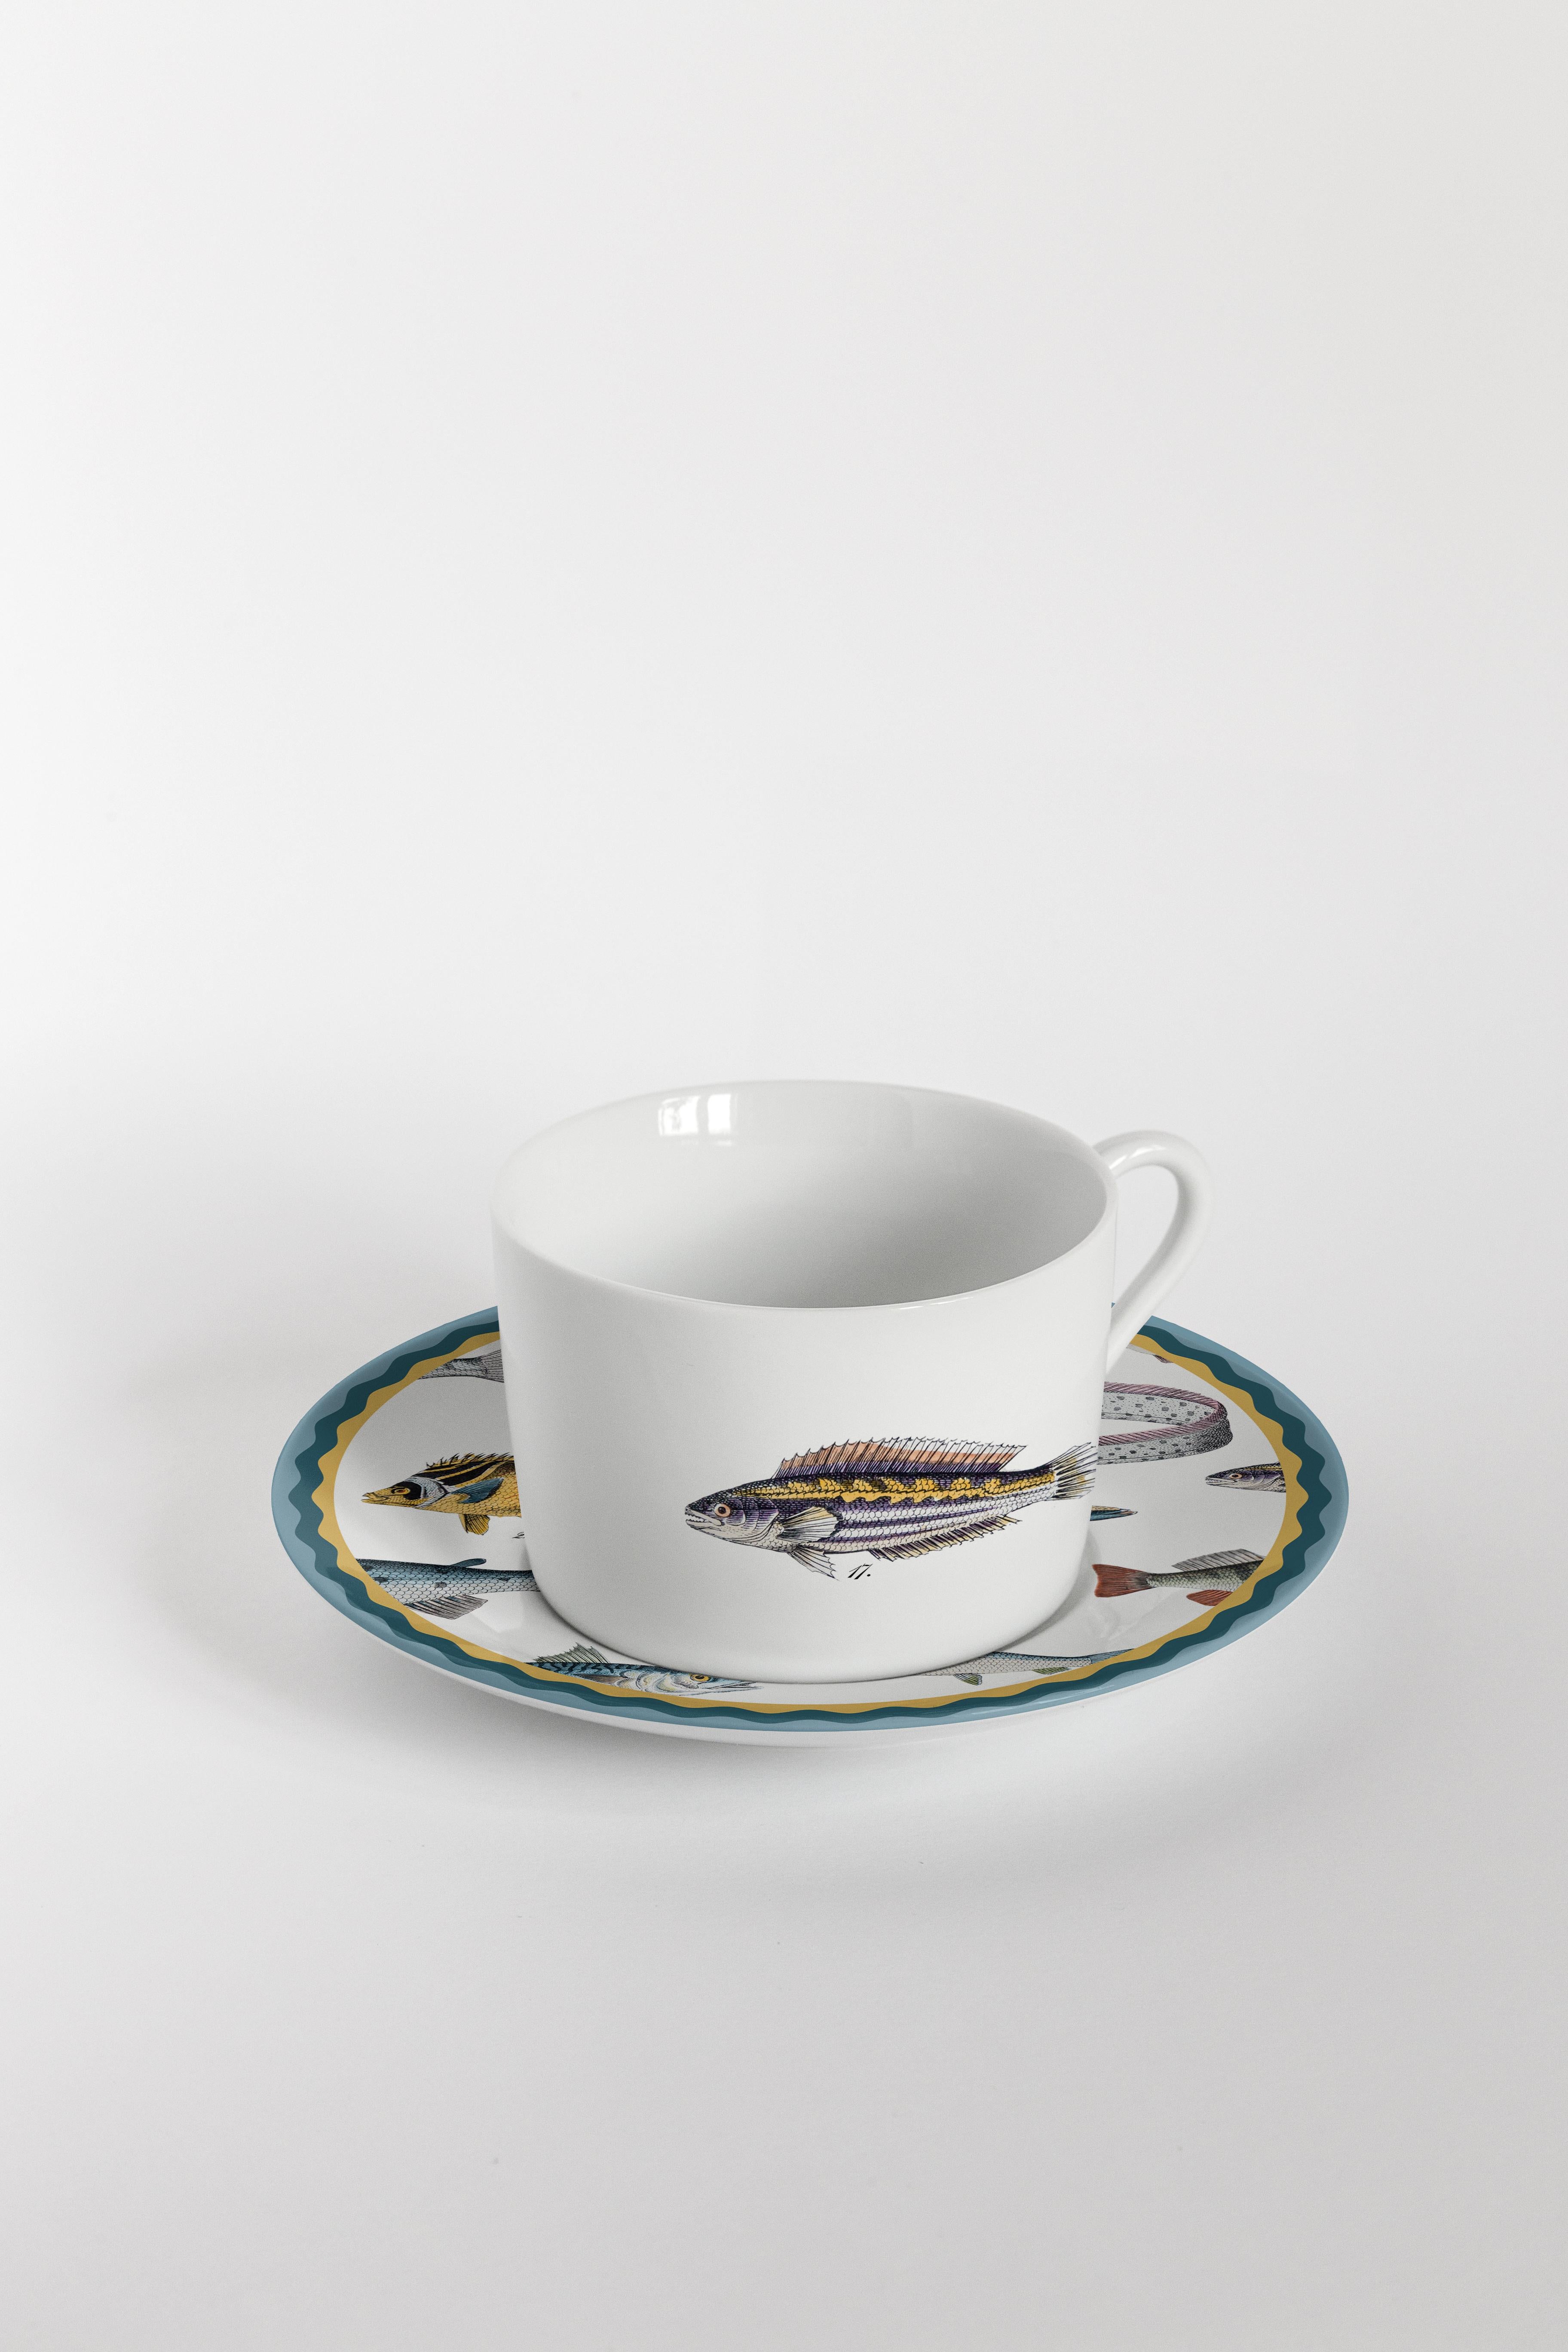 Cabinet De Curiosités, Six Contemporary Decorated Tea Cups with Plates For Sale 2